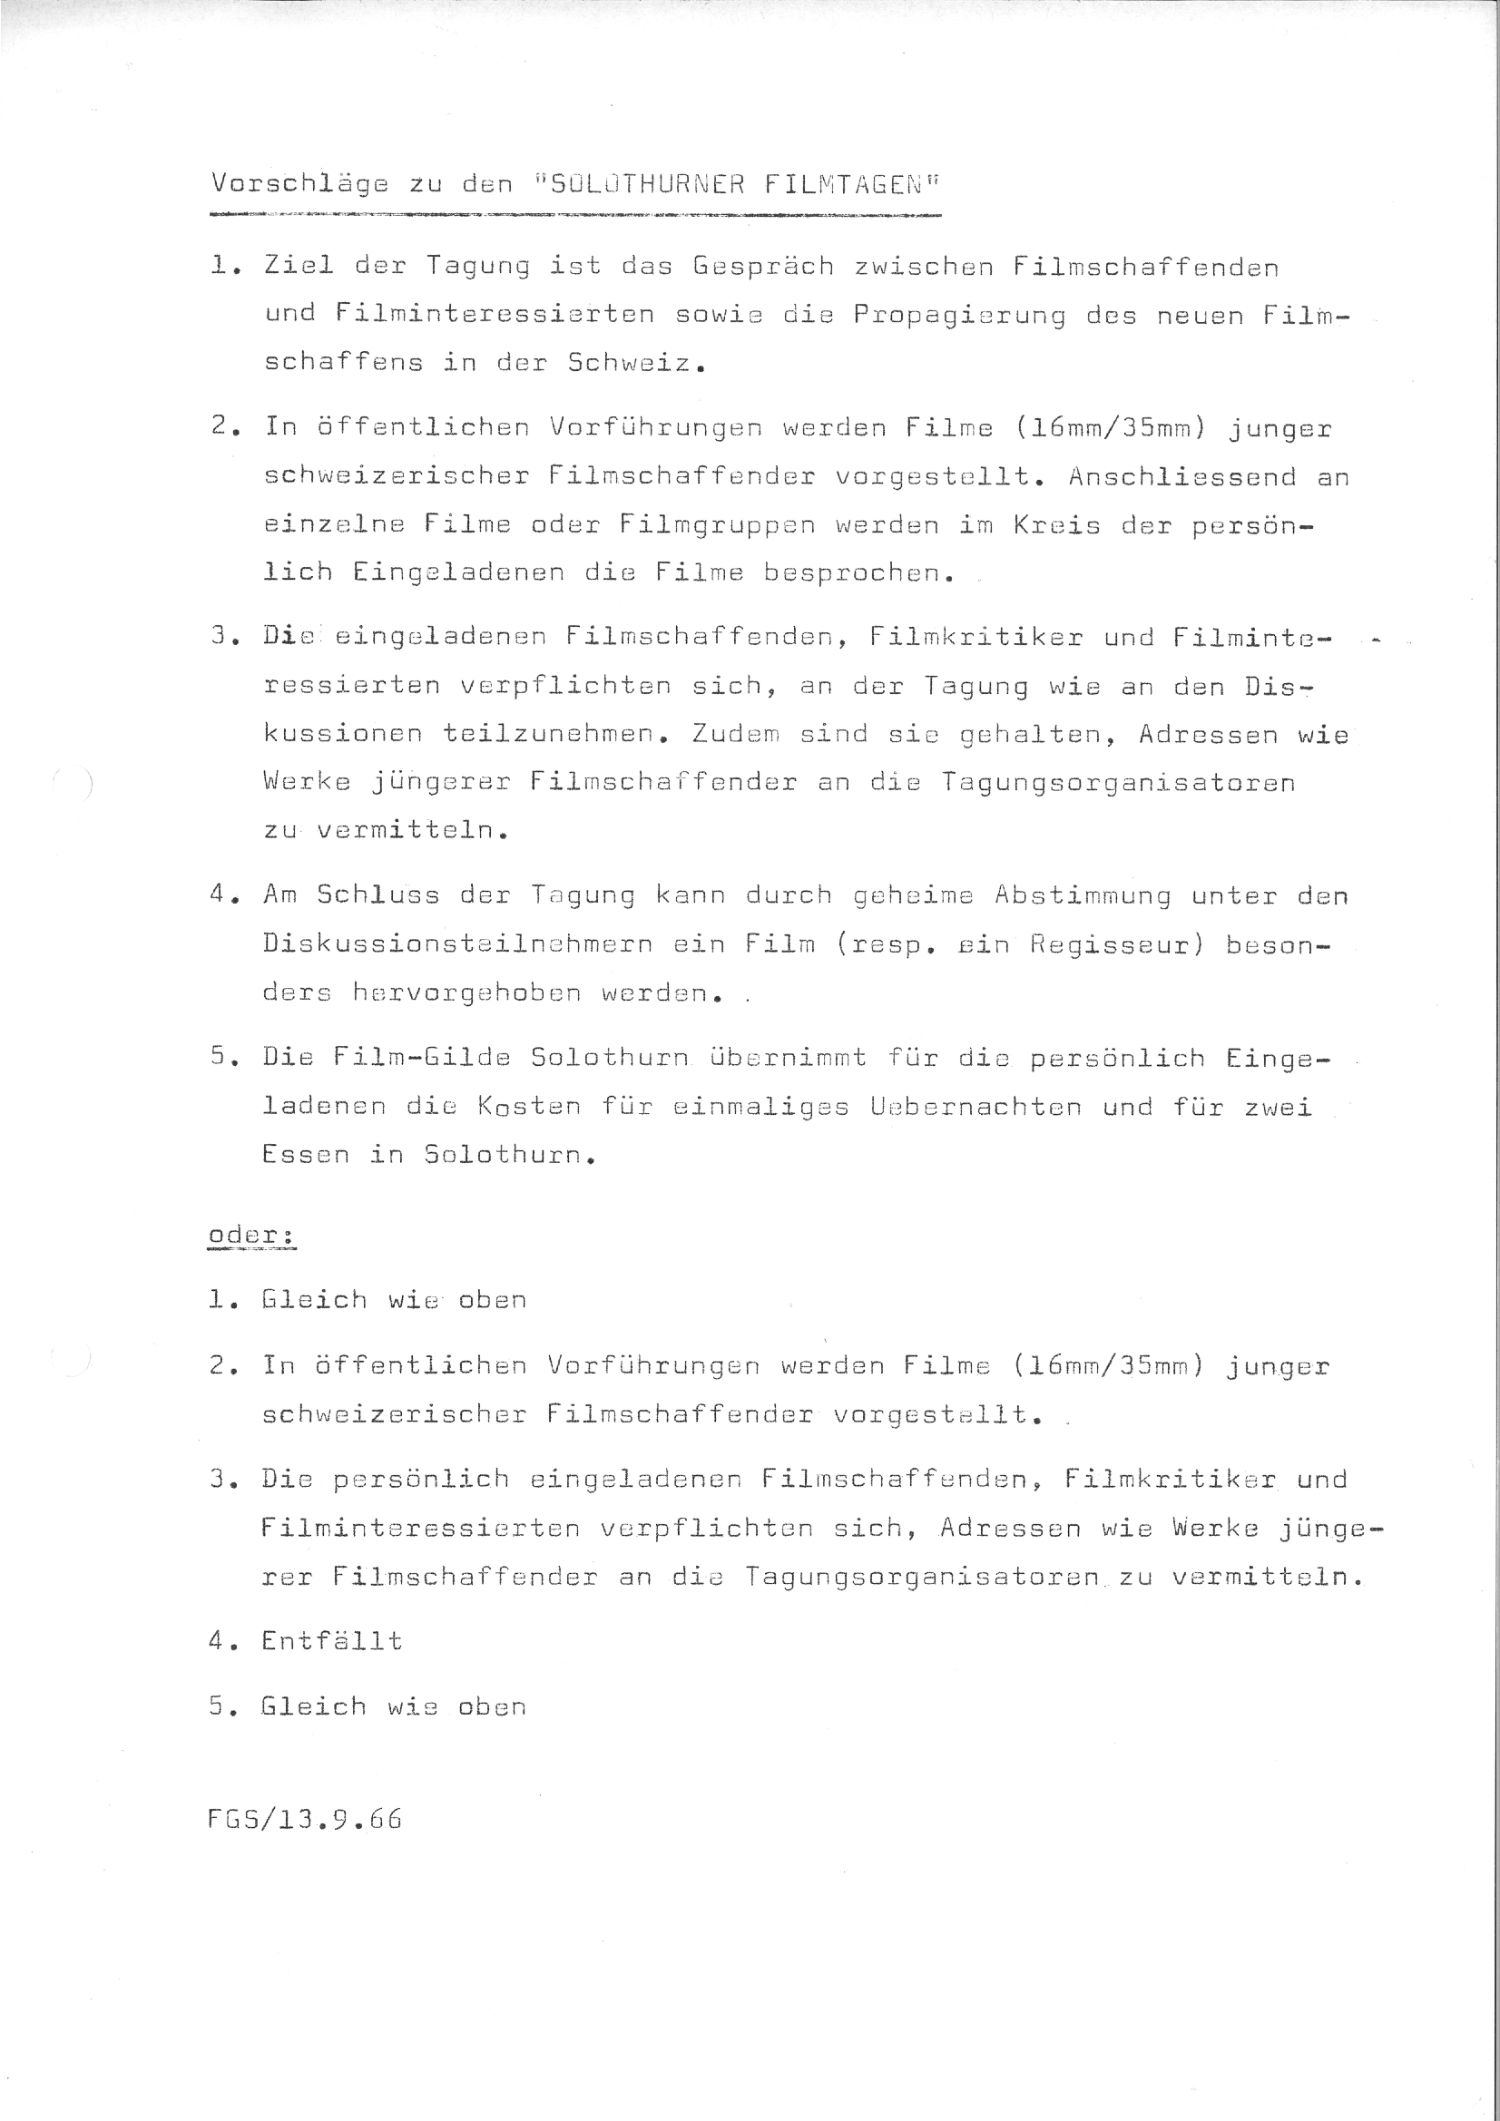 Vorschläge zu den Solothurner Filmtagen, 1966, S.2